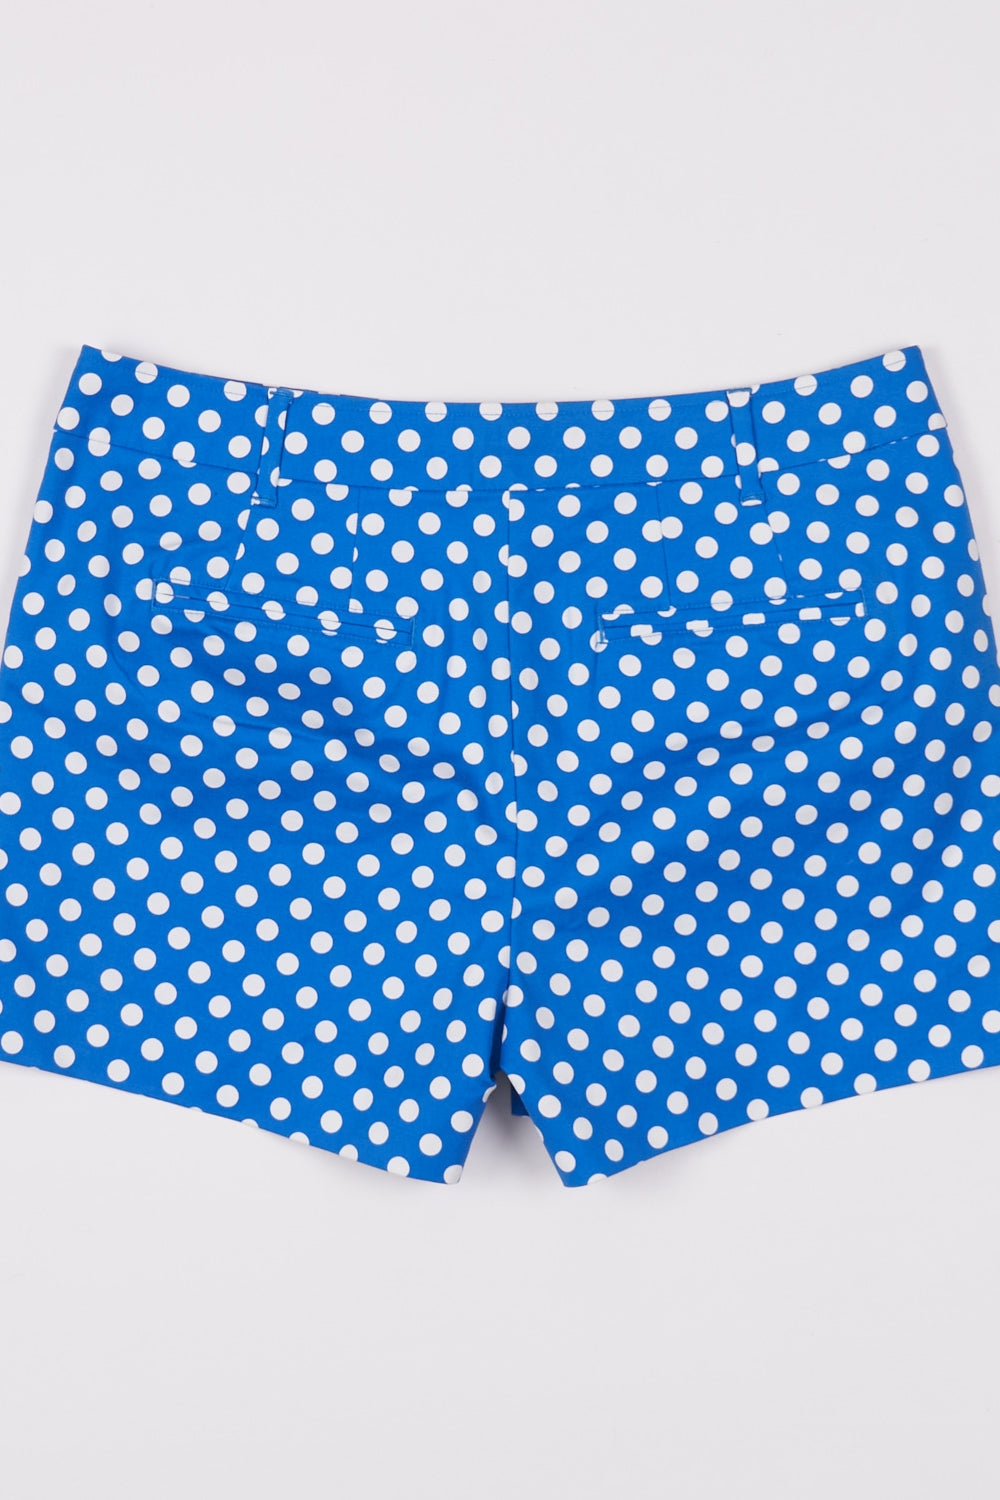 Boden Blue And White Polka Dot Shorts 12